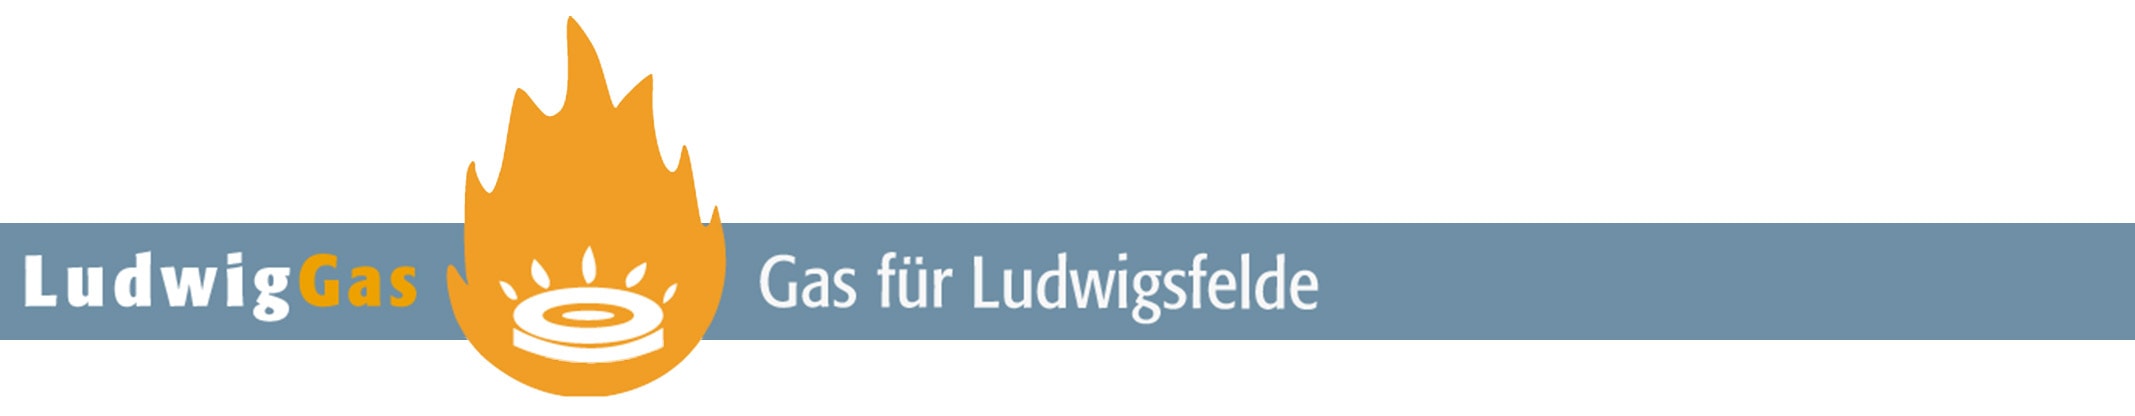 Banner LudwigGas